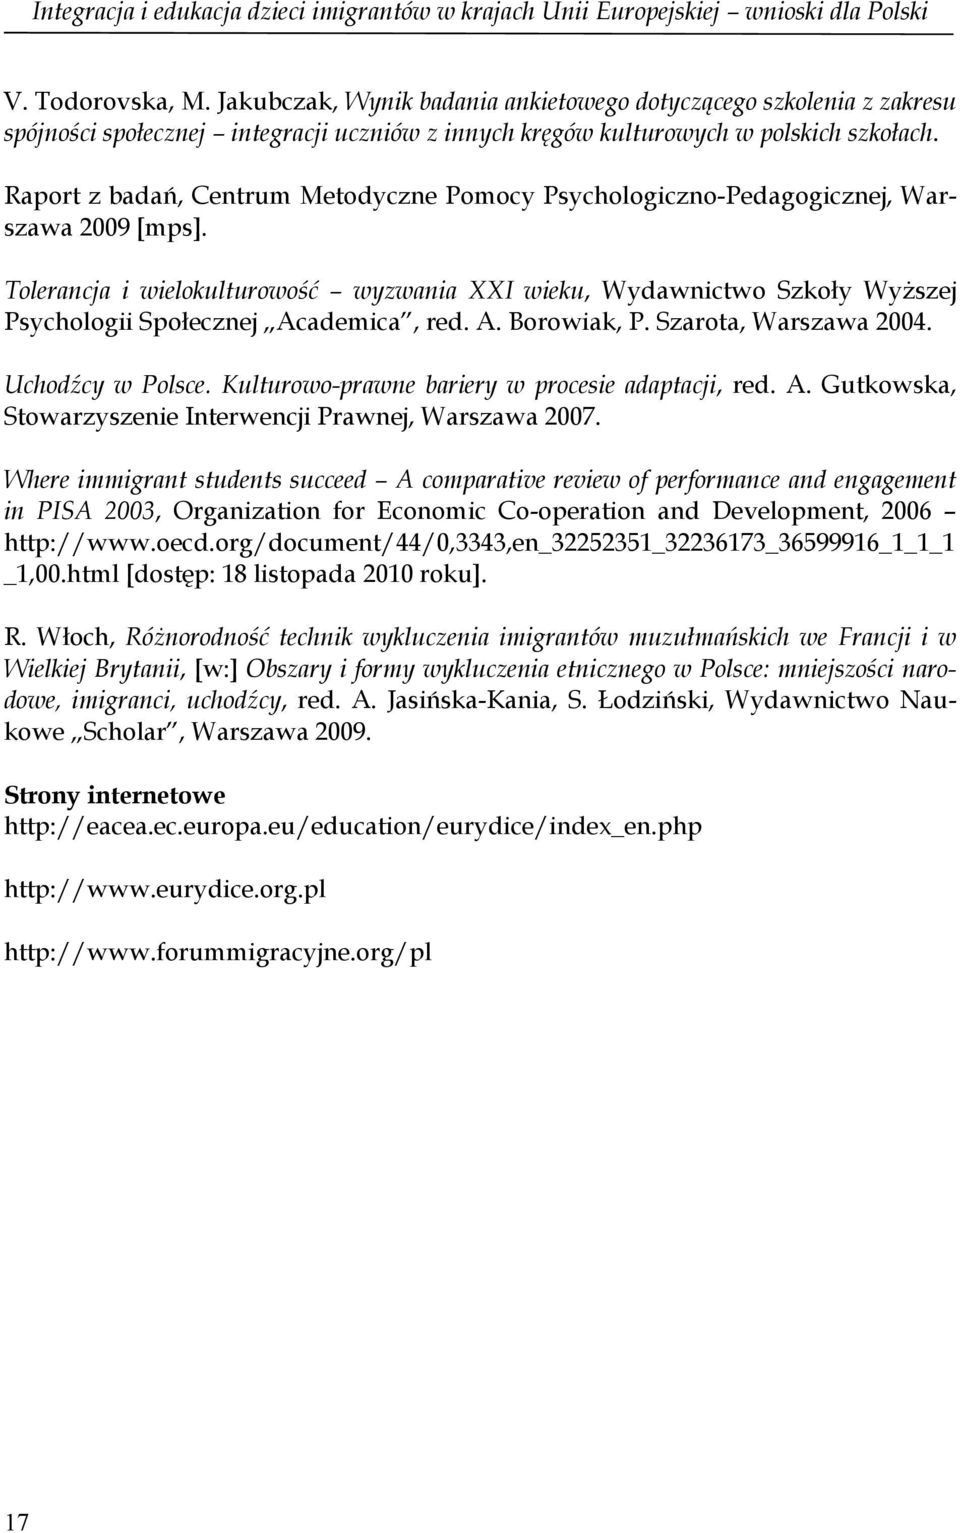 Raport z badań, Centrum Metodyczne Pomocy Psychologiczno-Pedagogicznej, Warszawa 2009 [mps].